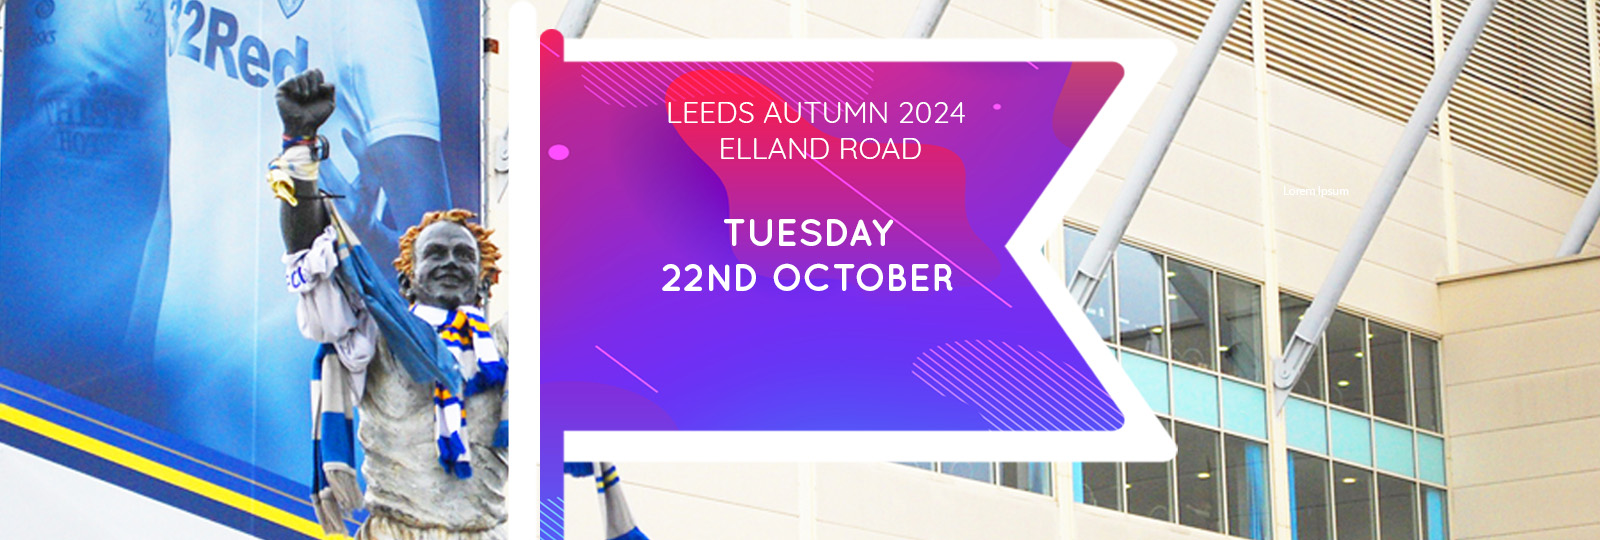 Leeds Autumn 2024 Fair